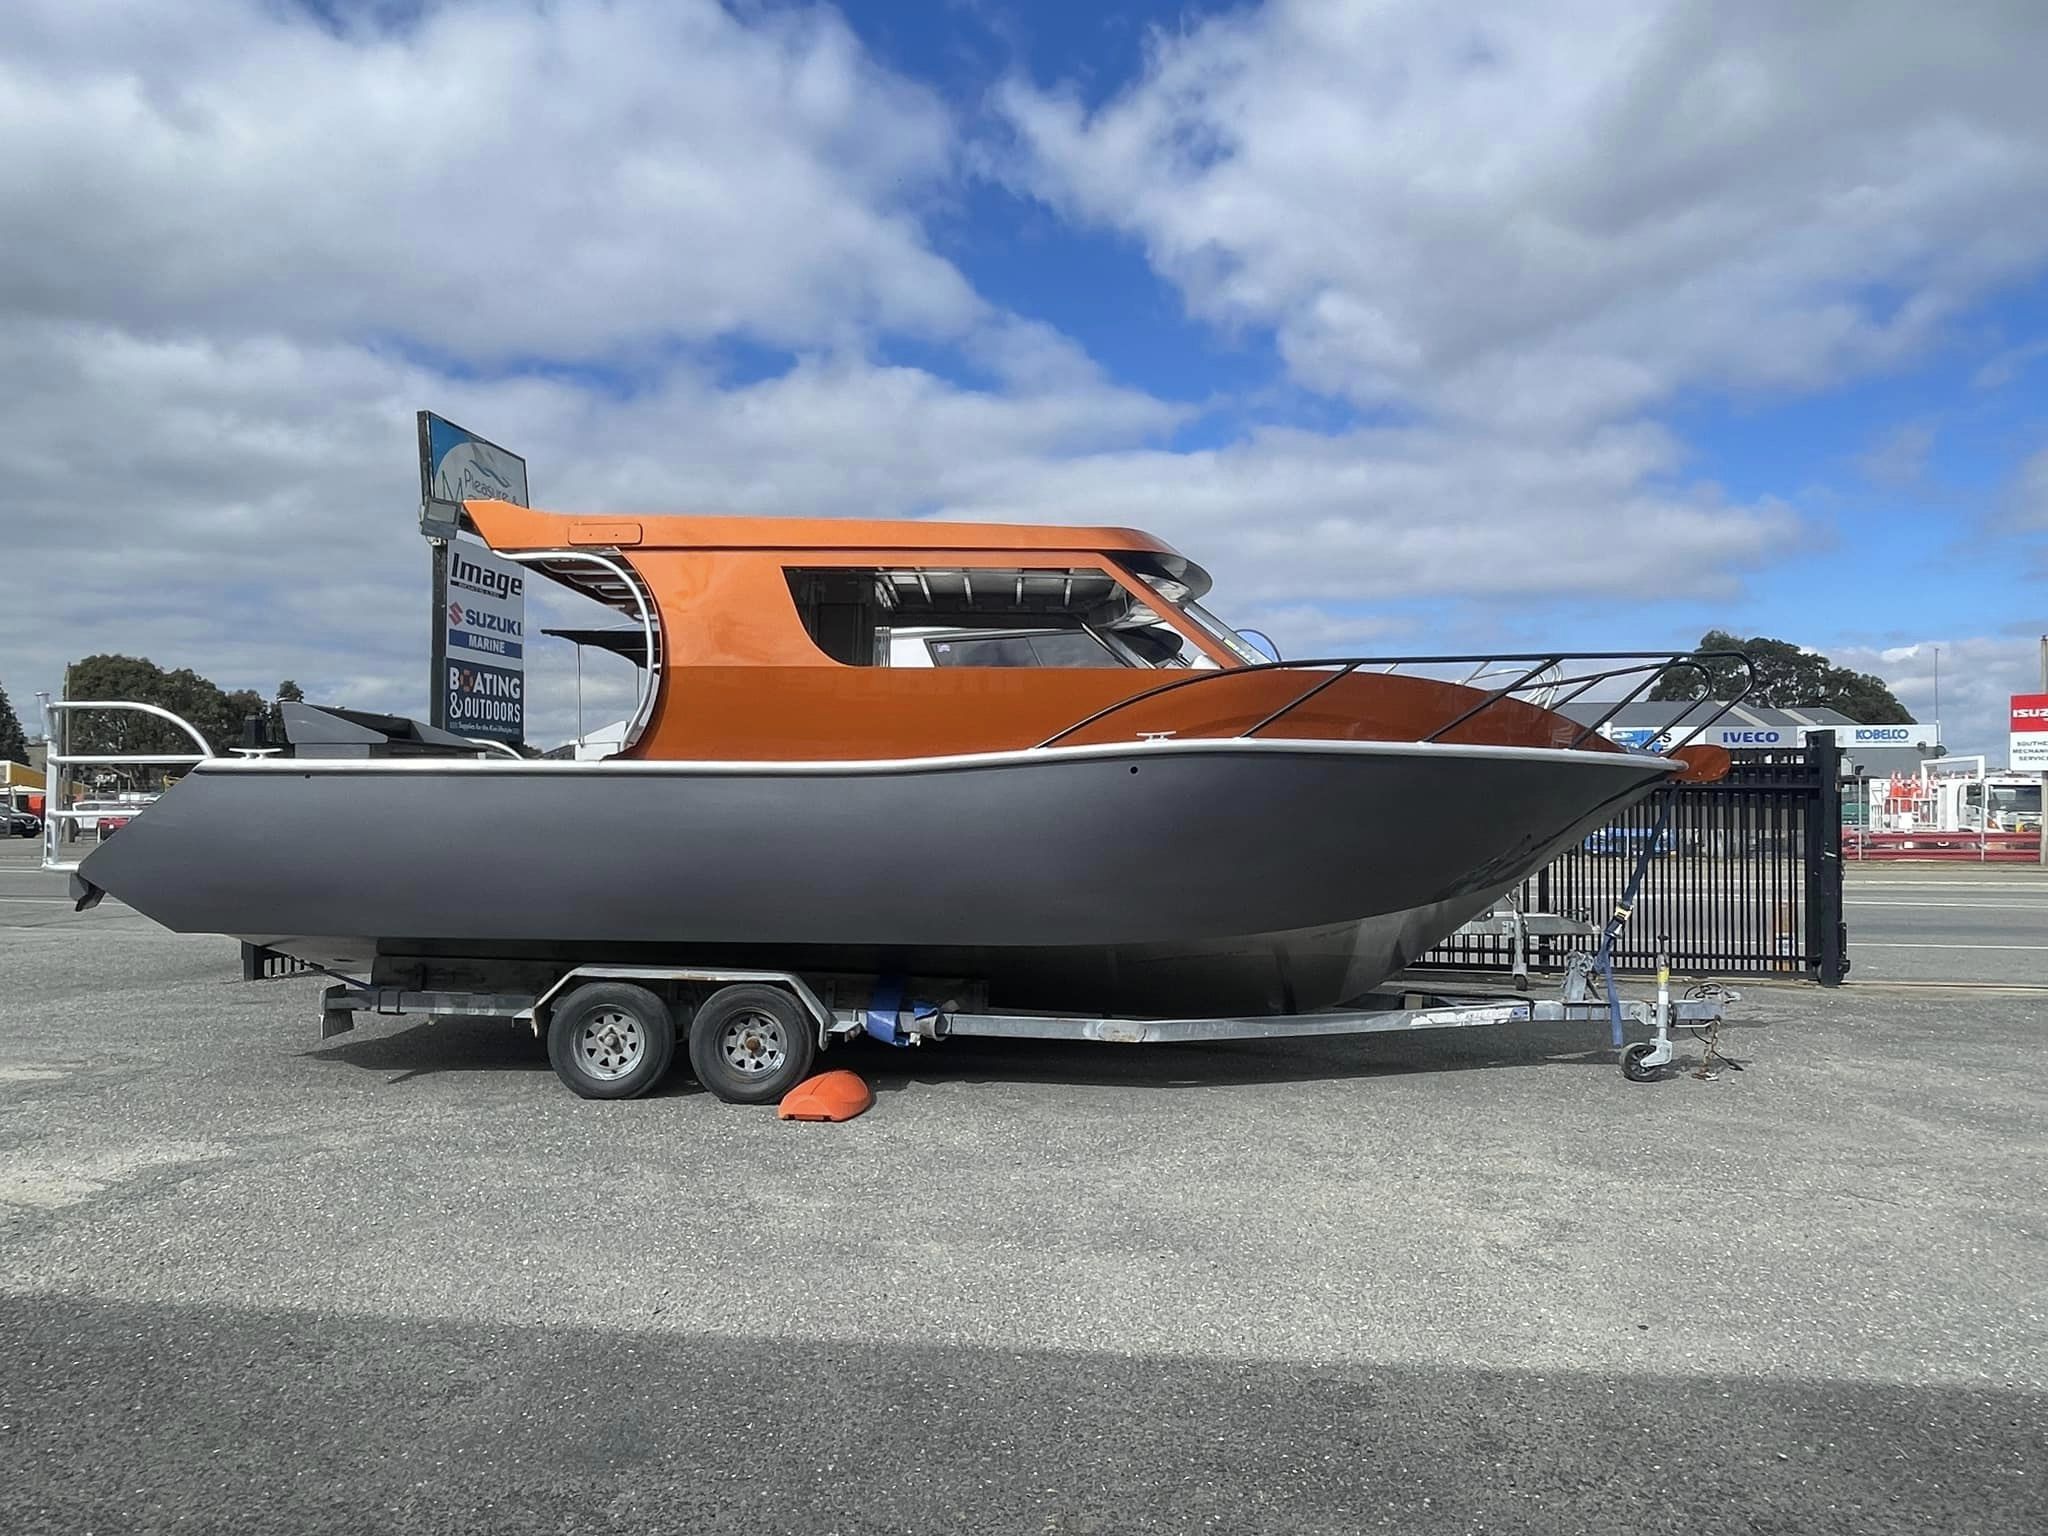 Image Boats NZ 8.0 Fishfinder Orange Boat parked in front of shop